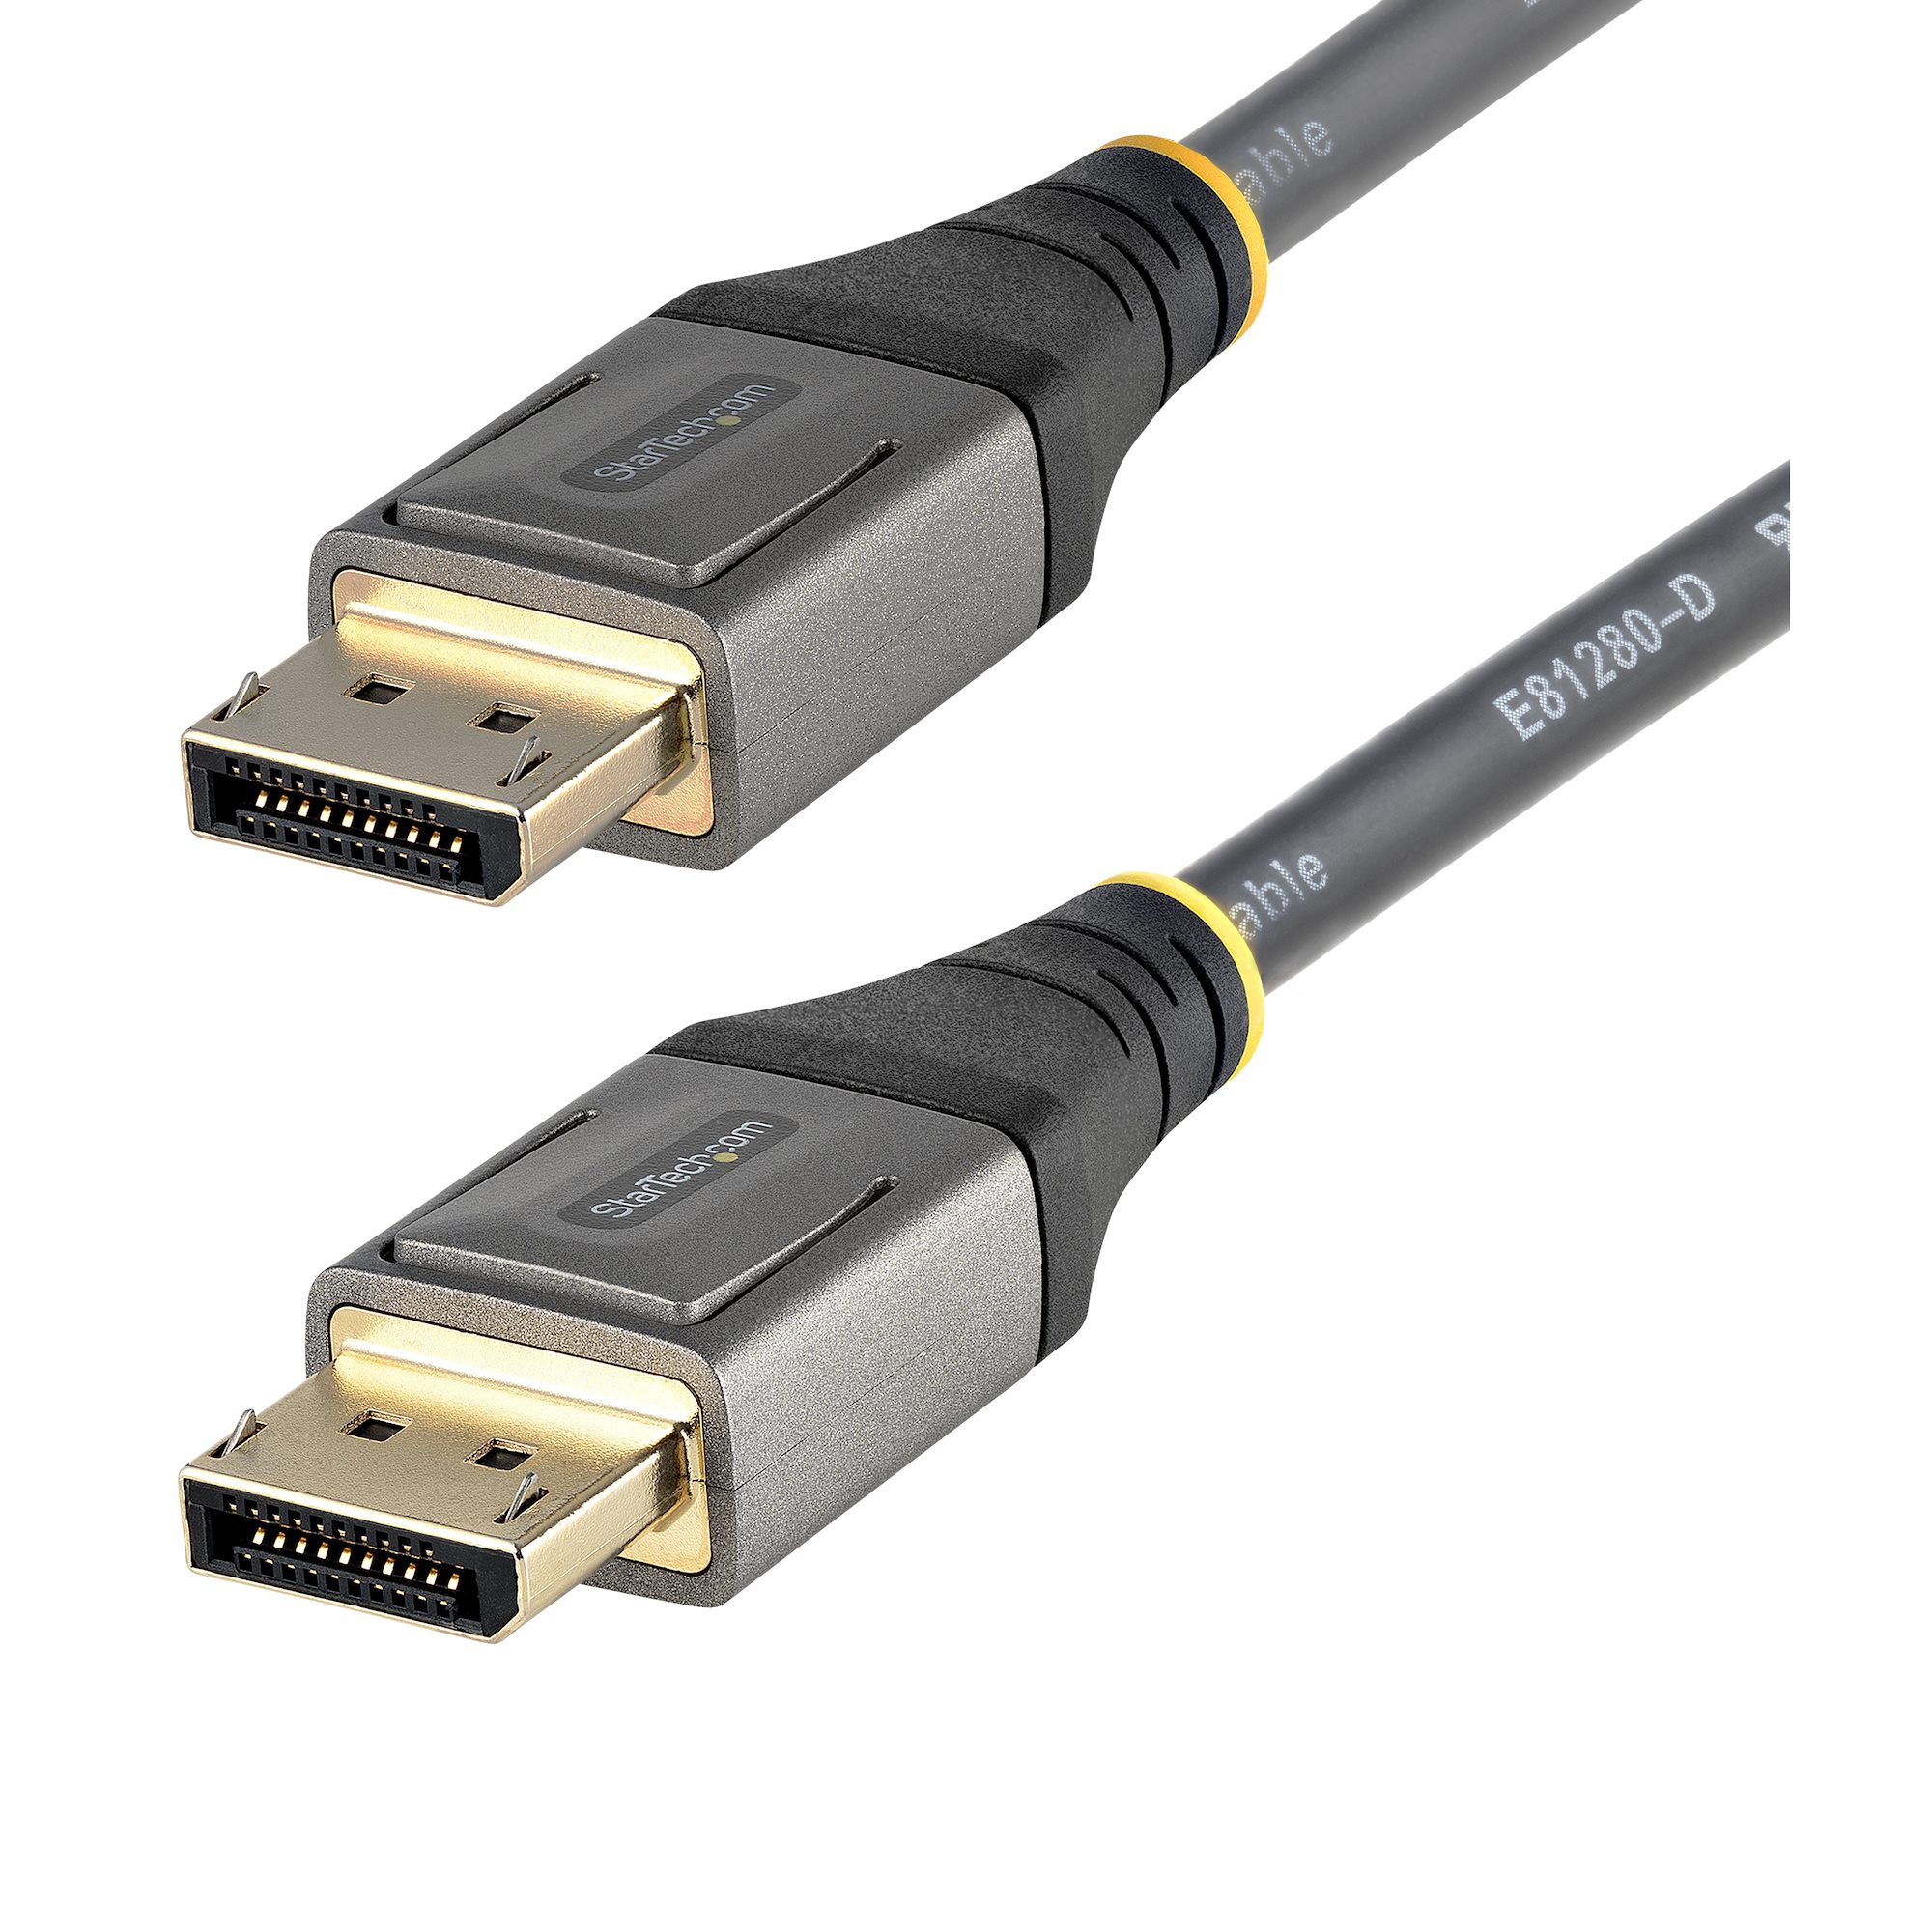 Cable de 3m DisplayPort 1.4 Certificado VESA - 8K de 60Hz HDR10 - Vídeo  Ultra HD 4K de 120Hz - Cable DP 1.4 - para Monitores o Pantallas - Cable